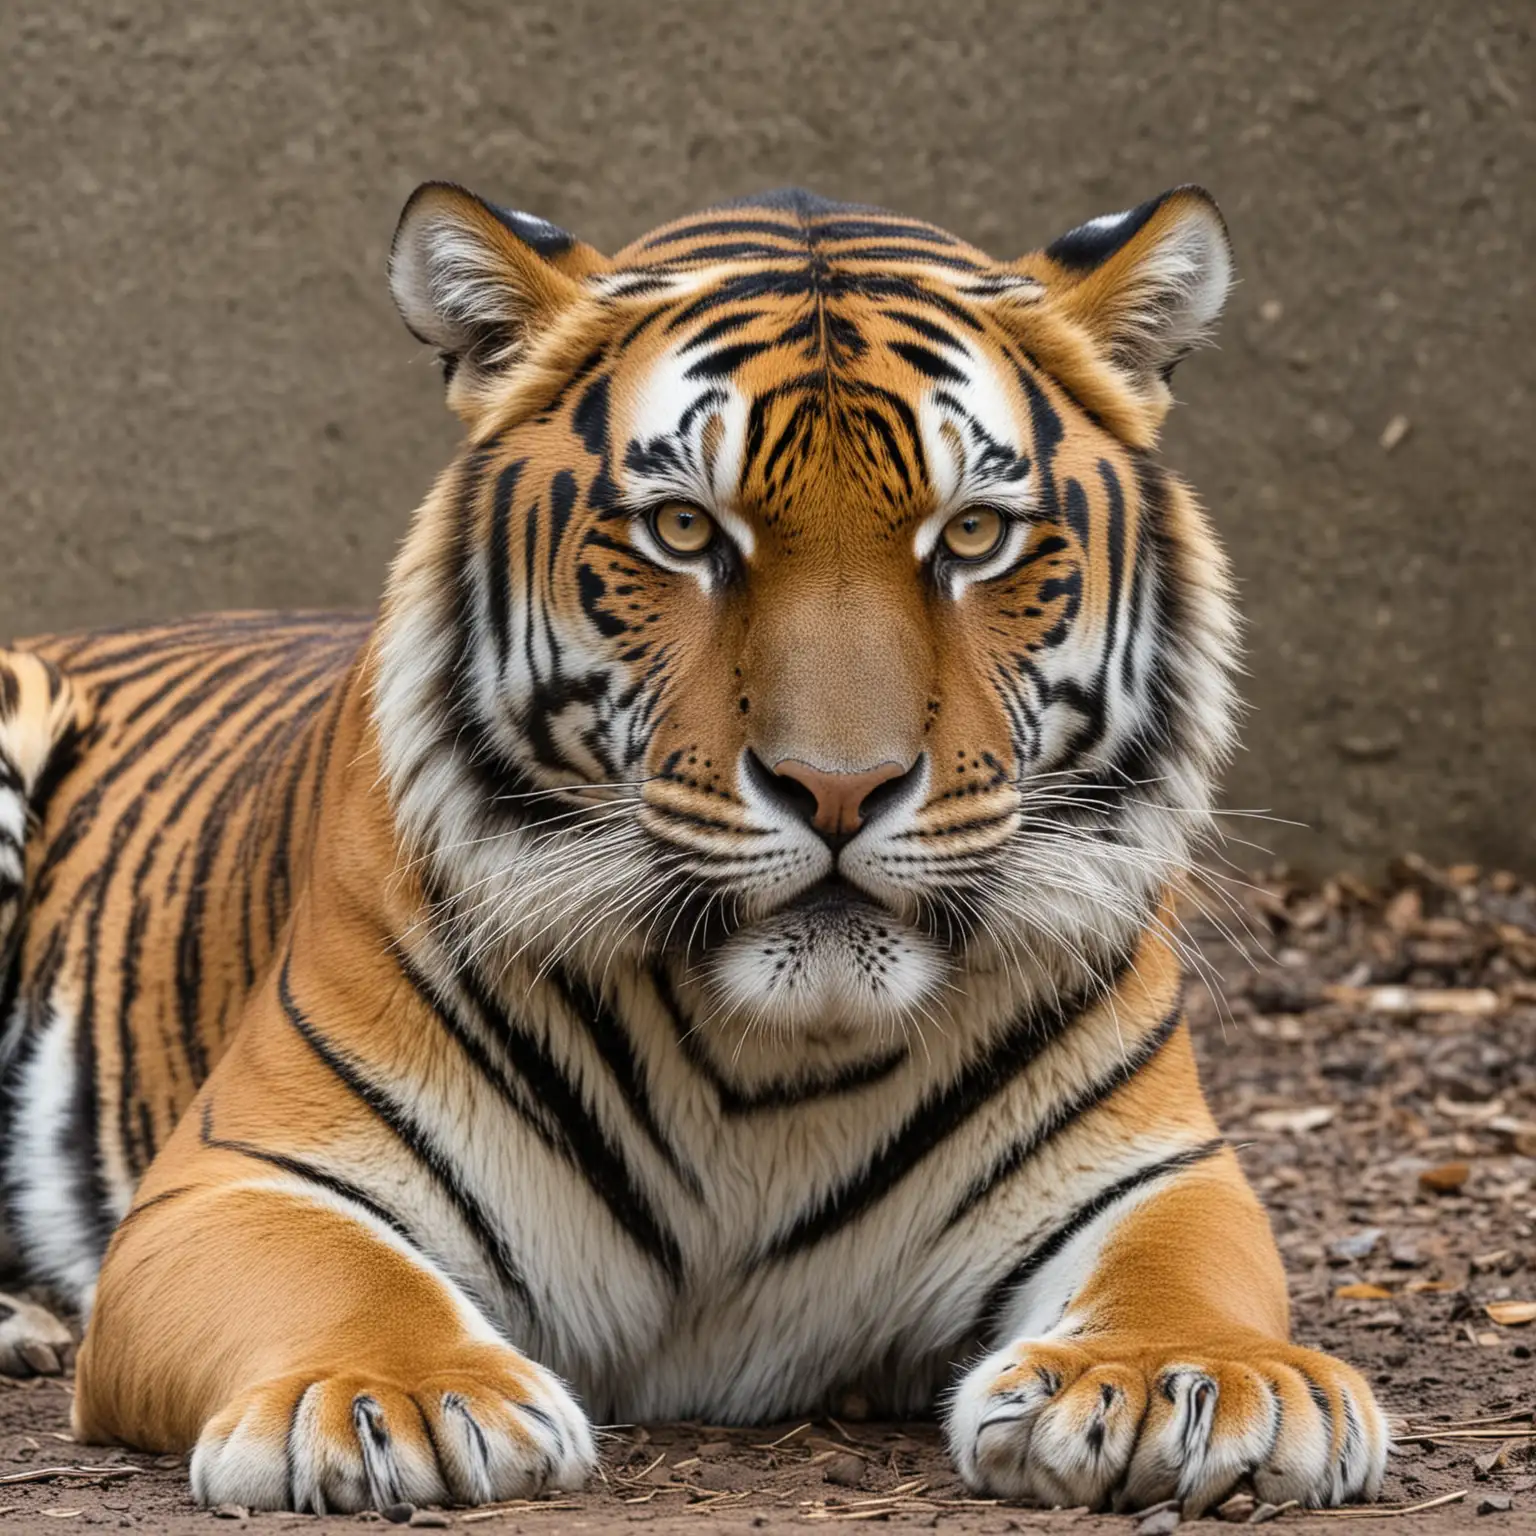 Tiger in Repose Intense Gaze Awaiting Prey